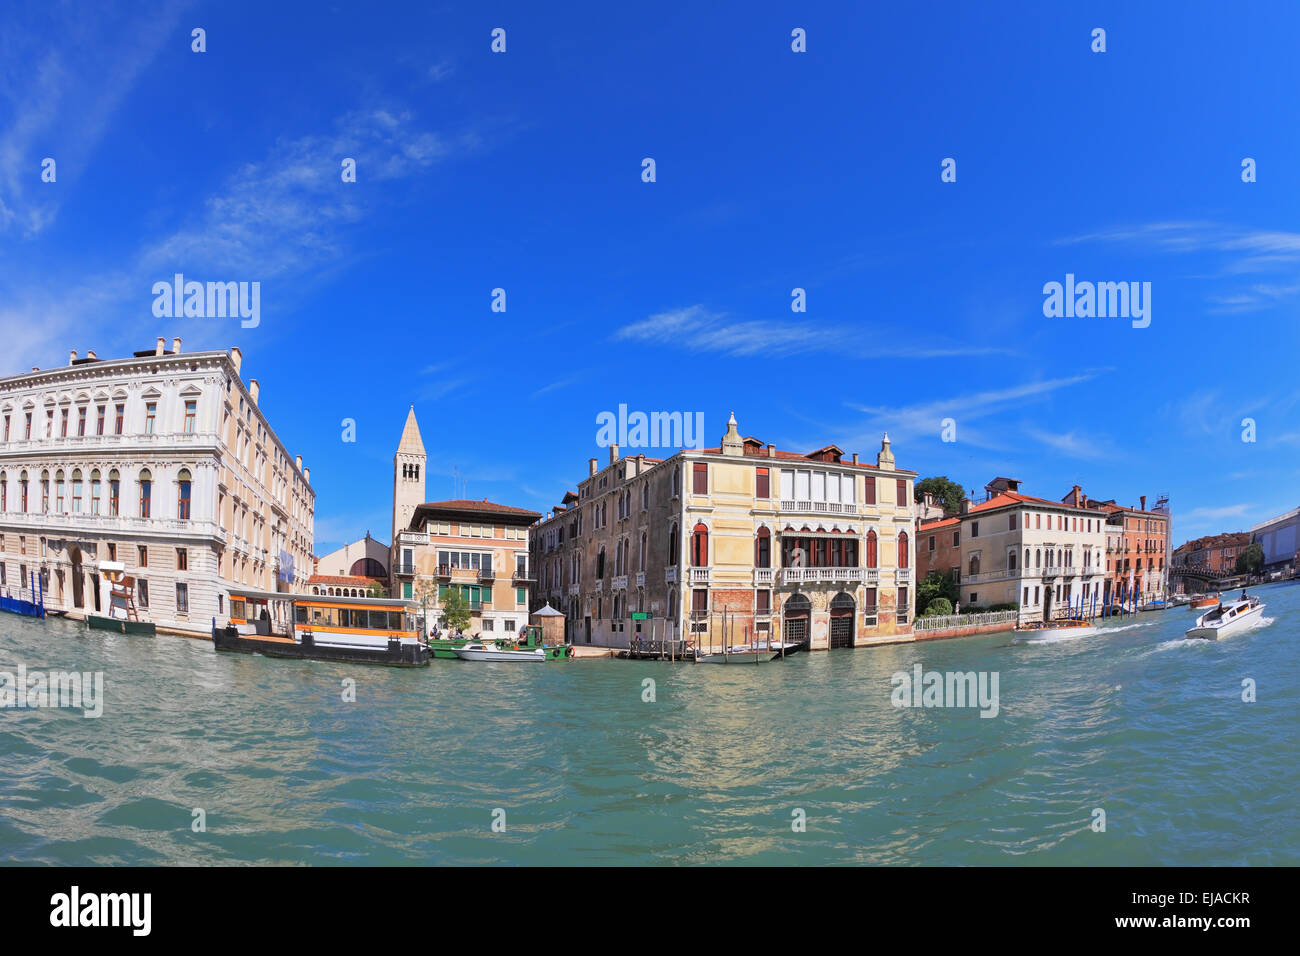 Il palazzo veneziano in una giornata di sole Foto Stock